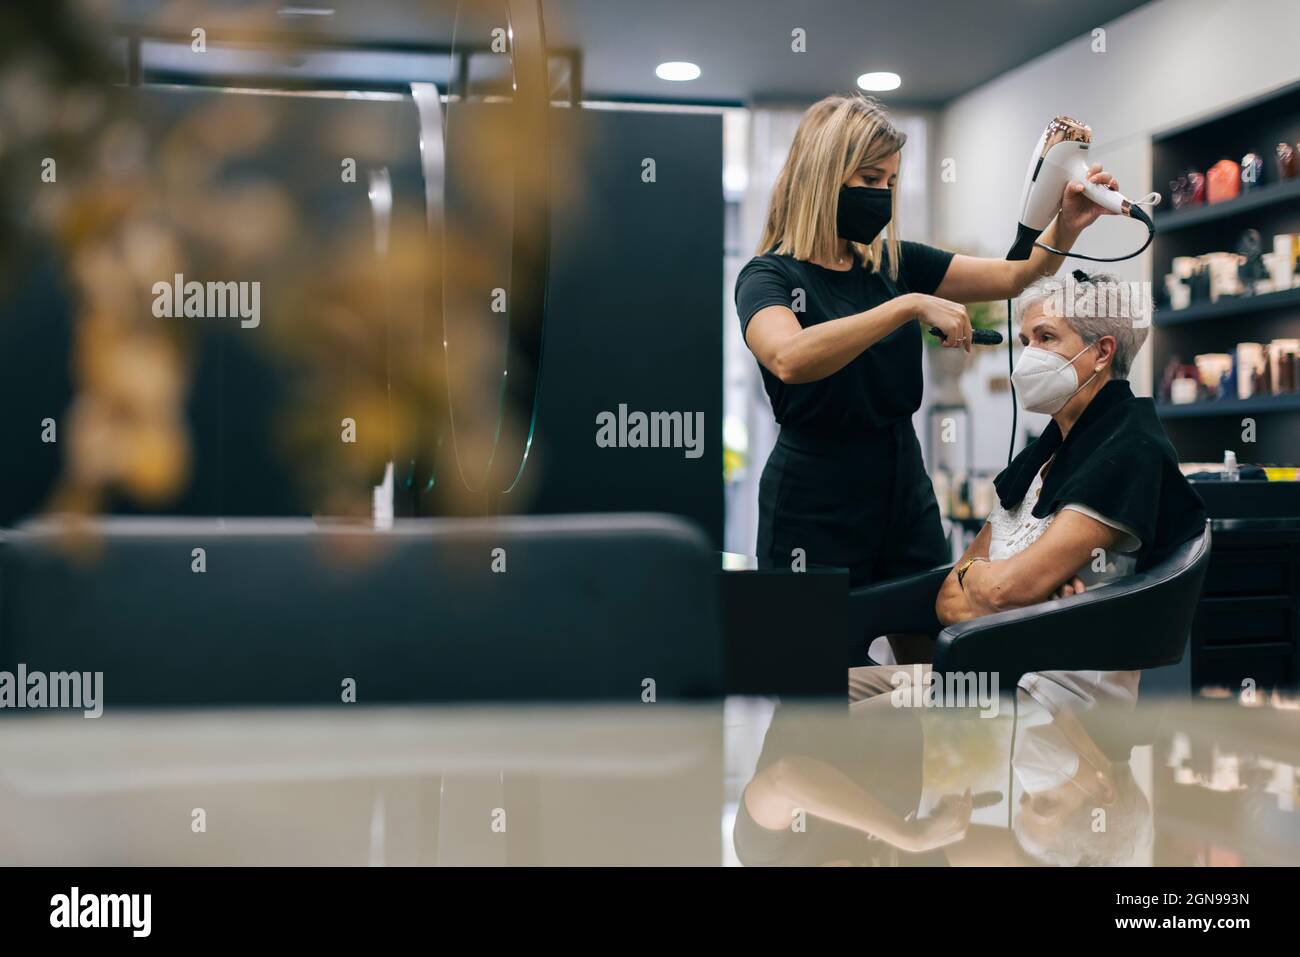 Weibliche Friseur mit Gesichtsmaske Schlag trocknende Kundenhaare im Salon Stockfoto